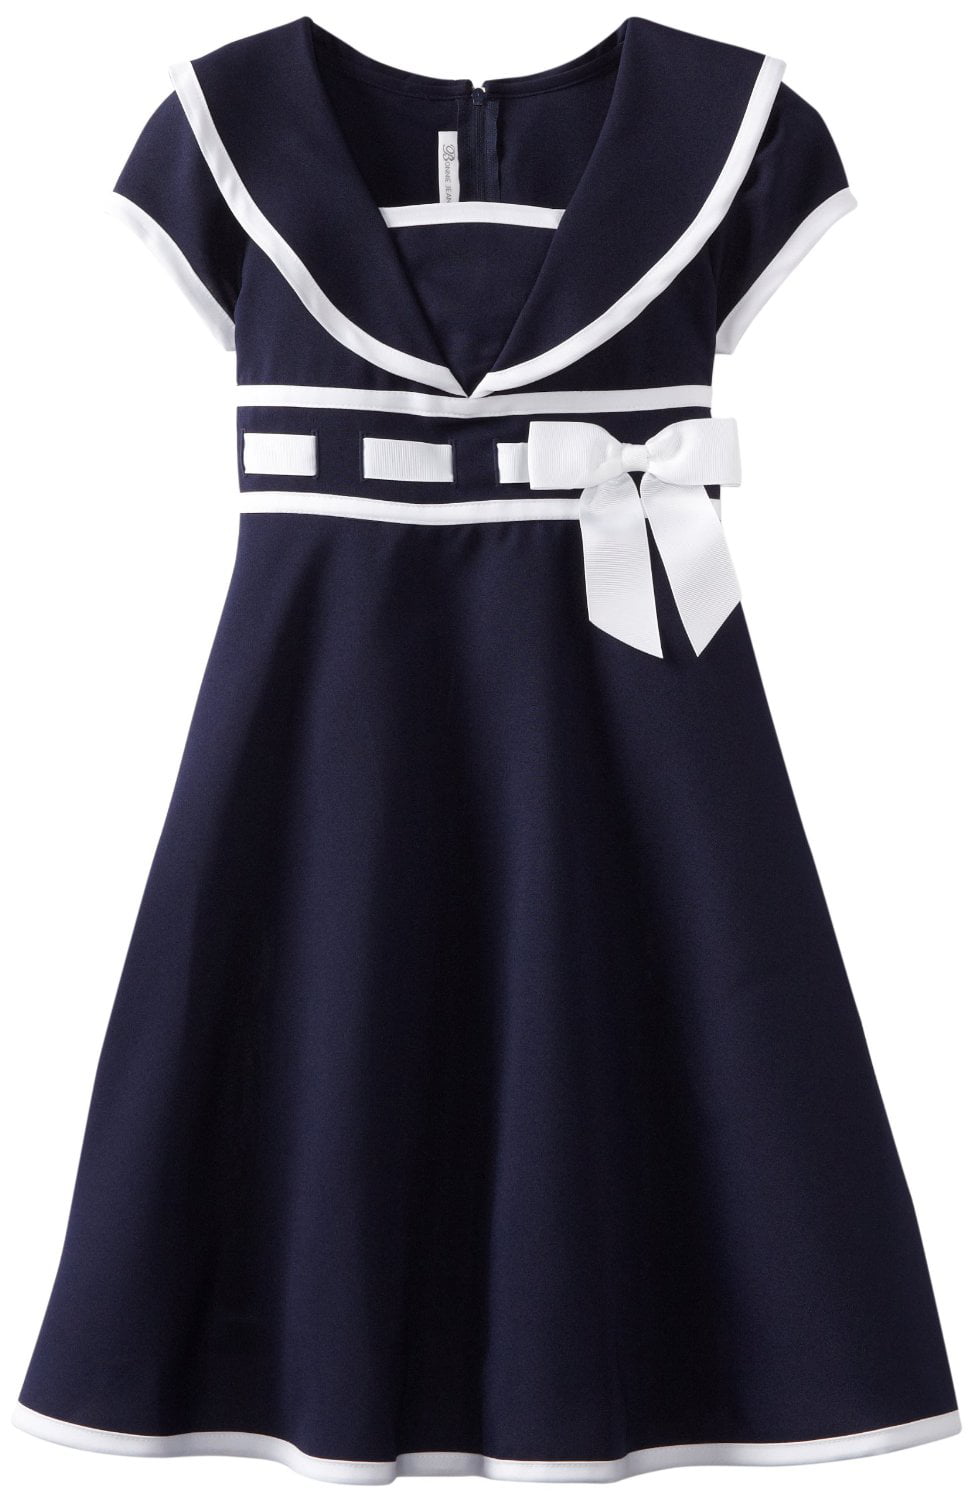 navy dress size 16